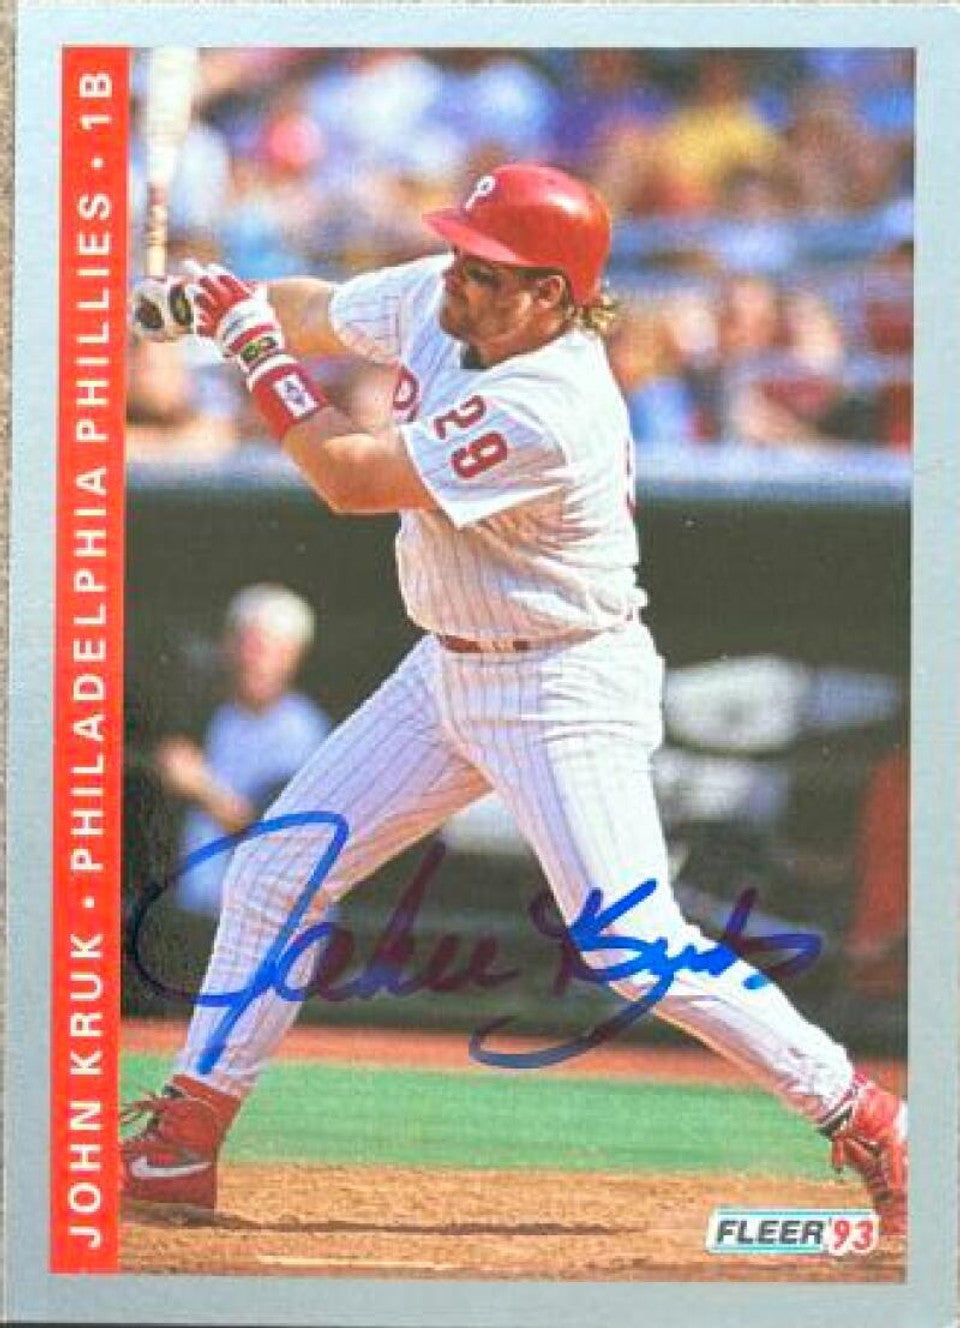 John Kruk Signed 1993 Fleer Baseball Card - Philadelphia Phillies